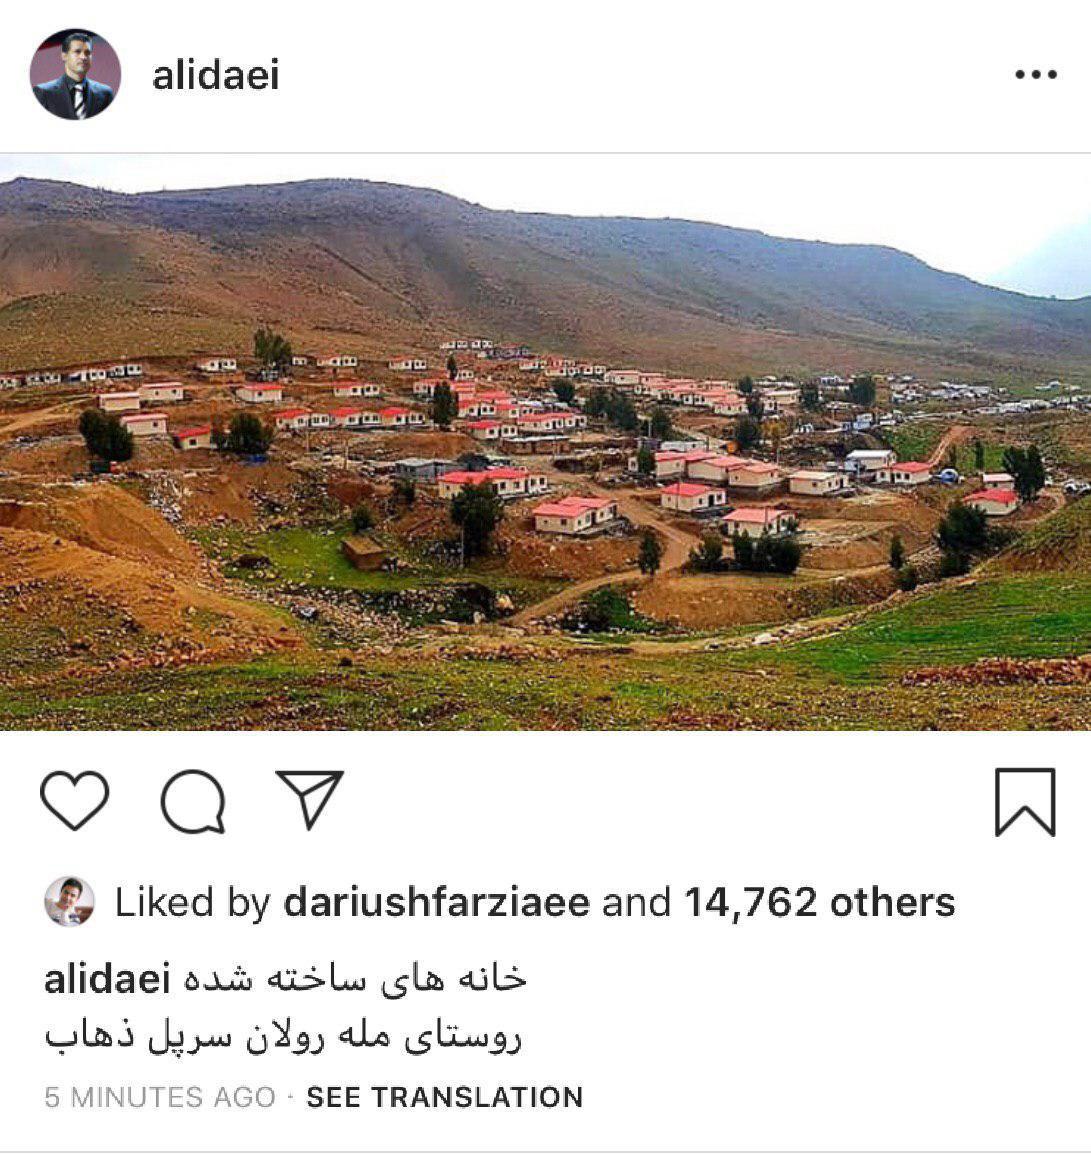 تصویری که علی دایی از روستای آبادشده در سرپل ذهاب منتشر كرد